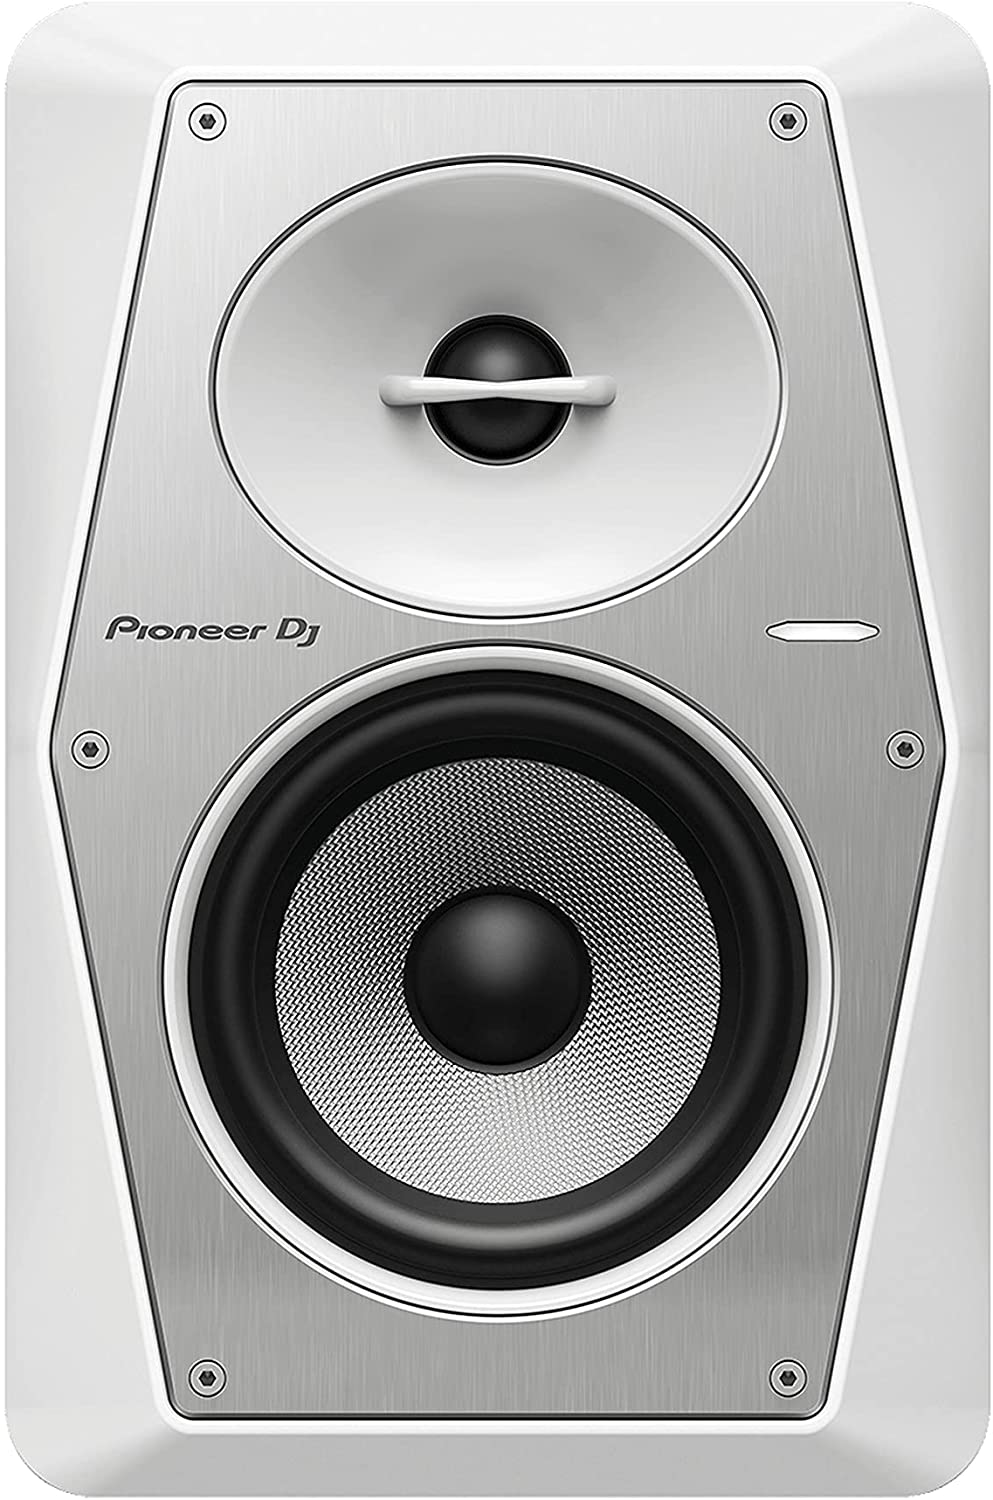 Pioneer DJ Studio Monitor VM-50-W là một sản phẩm âm thanh chuyên nghiệp đến từ thương hiệu danh tiếng Pioneer. Với chất âm trung thực và khả năng tái tạo âm thanh tuyệt vời, sản phẩm này là sự lựa chọn hoàn hảo cho các nhạc sĩ, DJ hoặc các chuyên gia âm thanh.